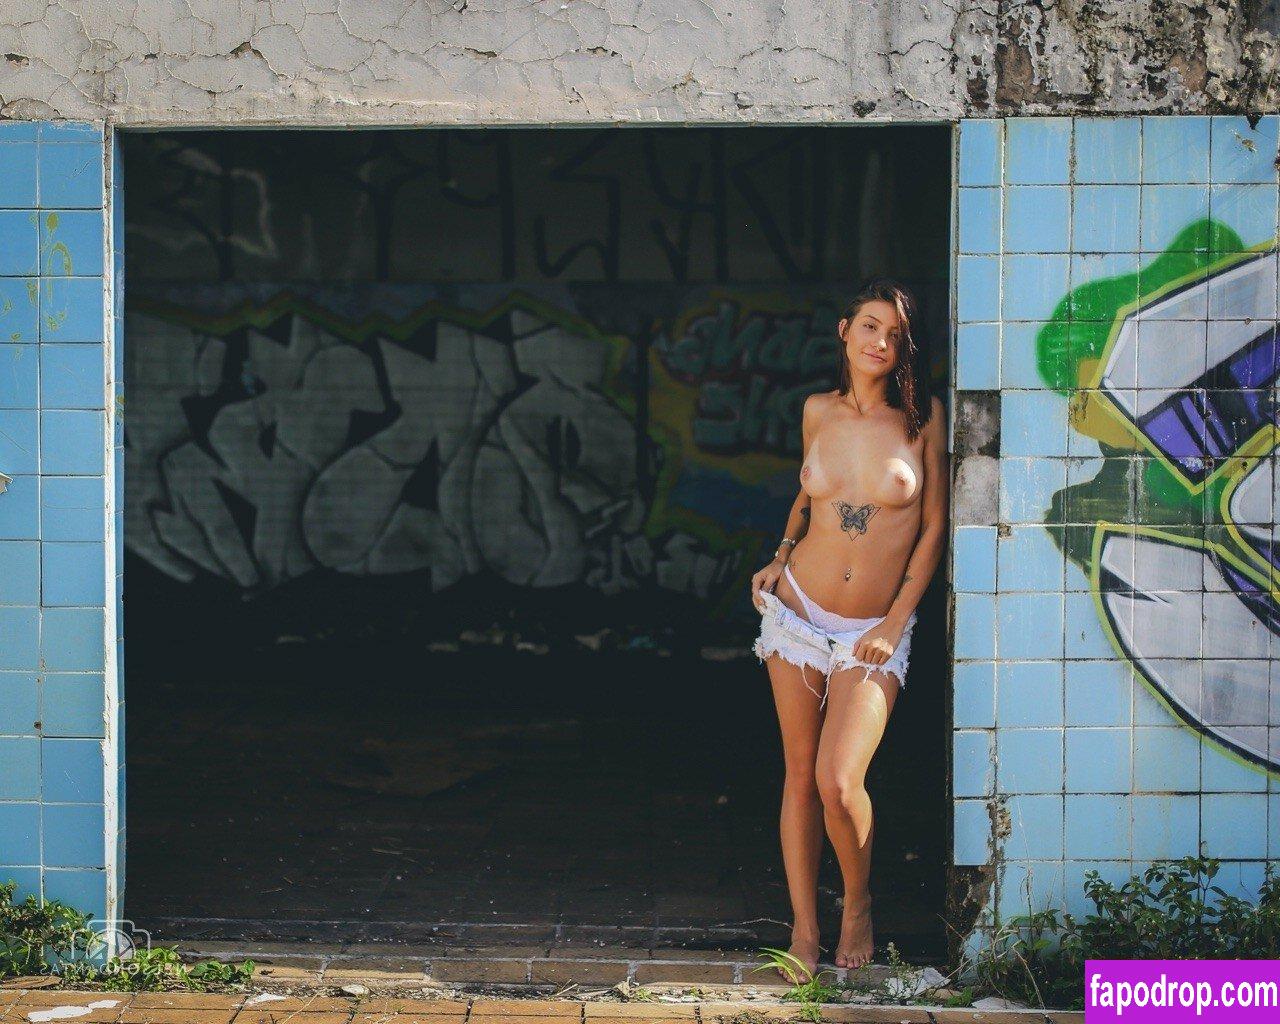 Monica Rudi / monicaarudi leak of nude photo #0012 from OnlyFans or Patreon